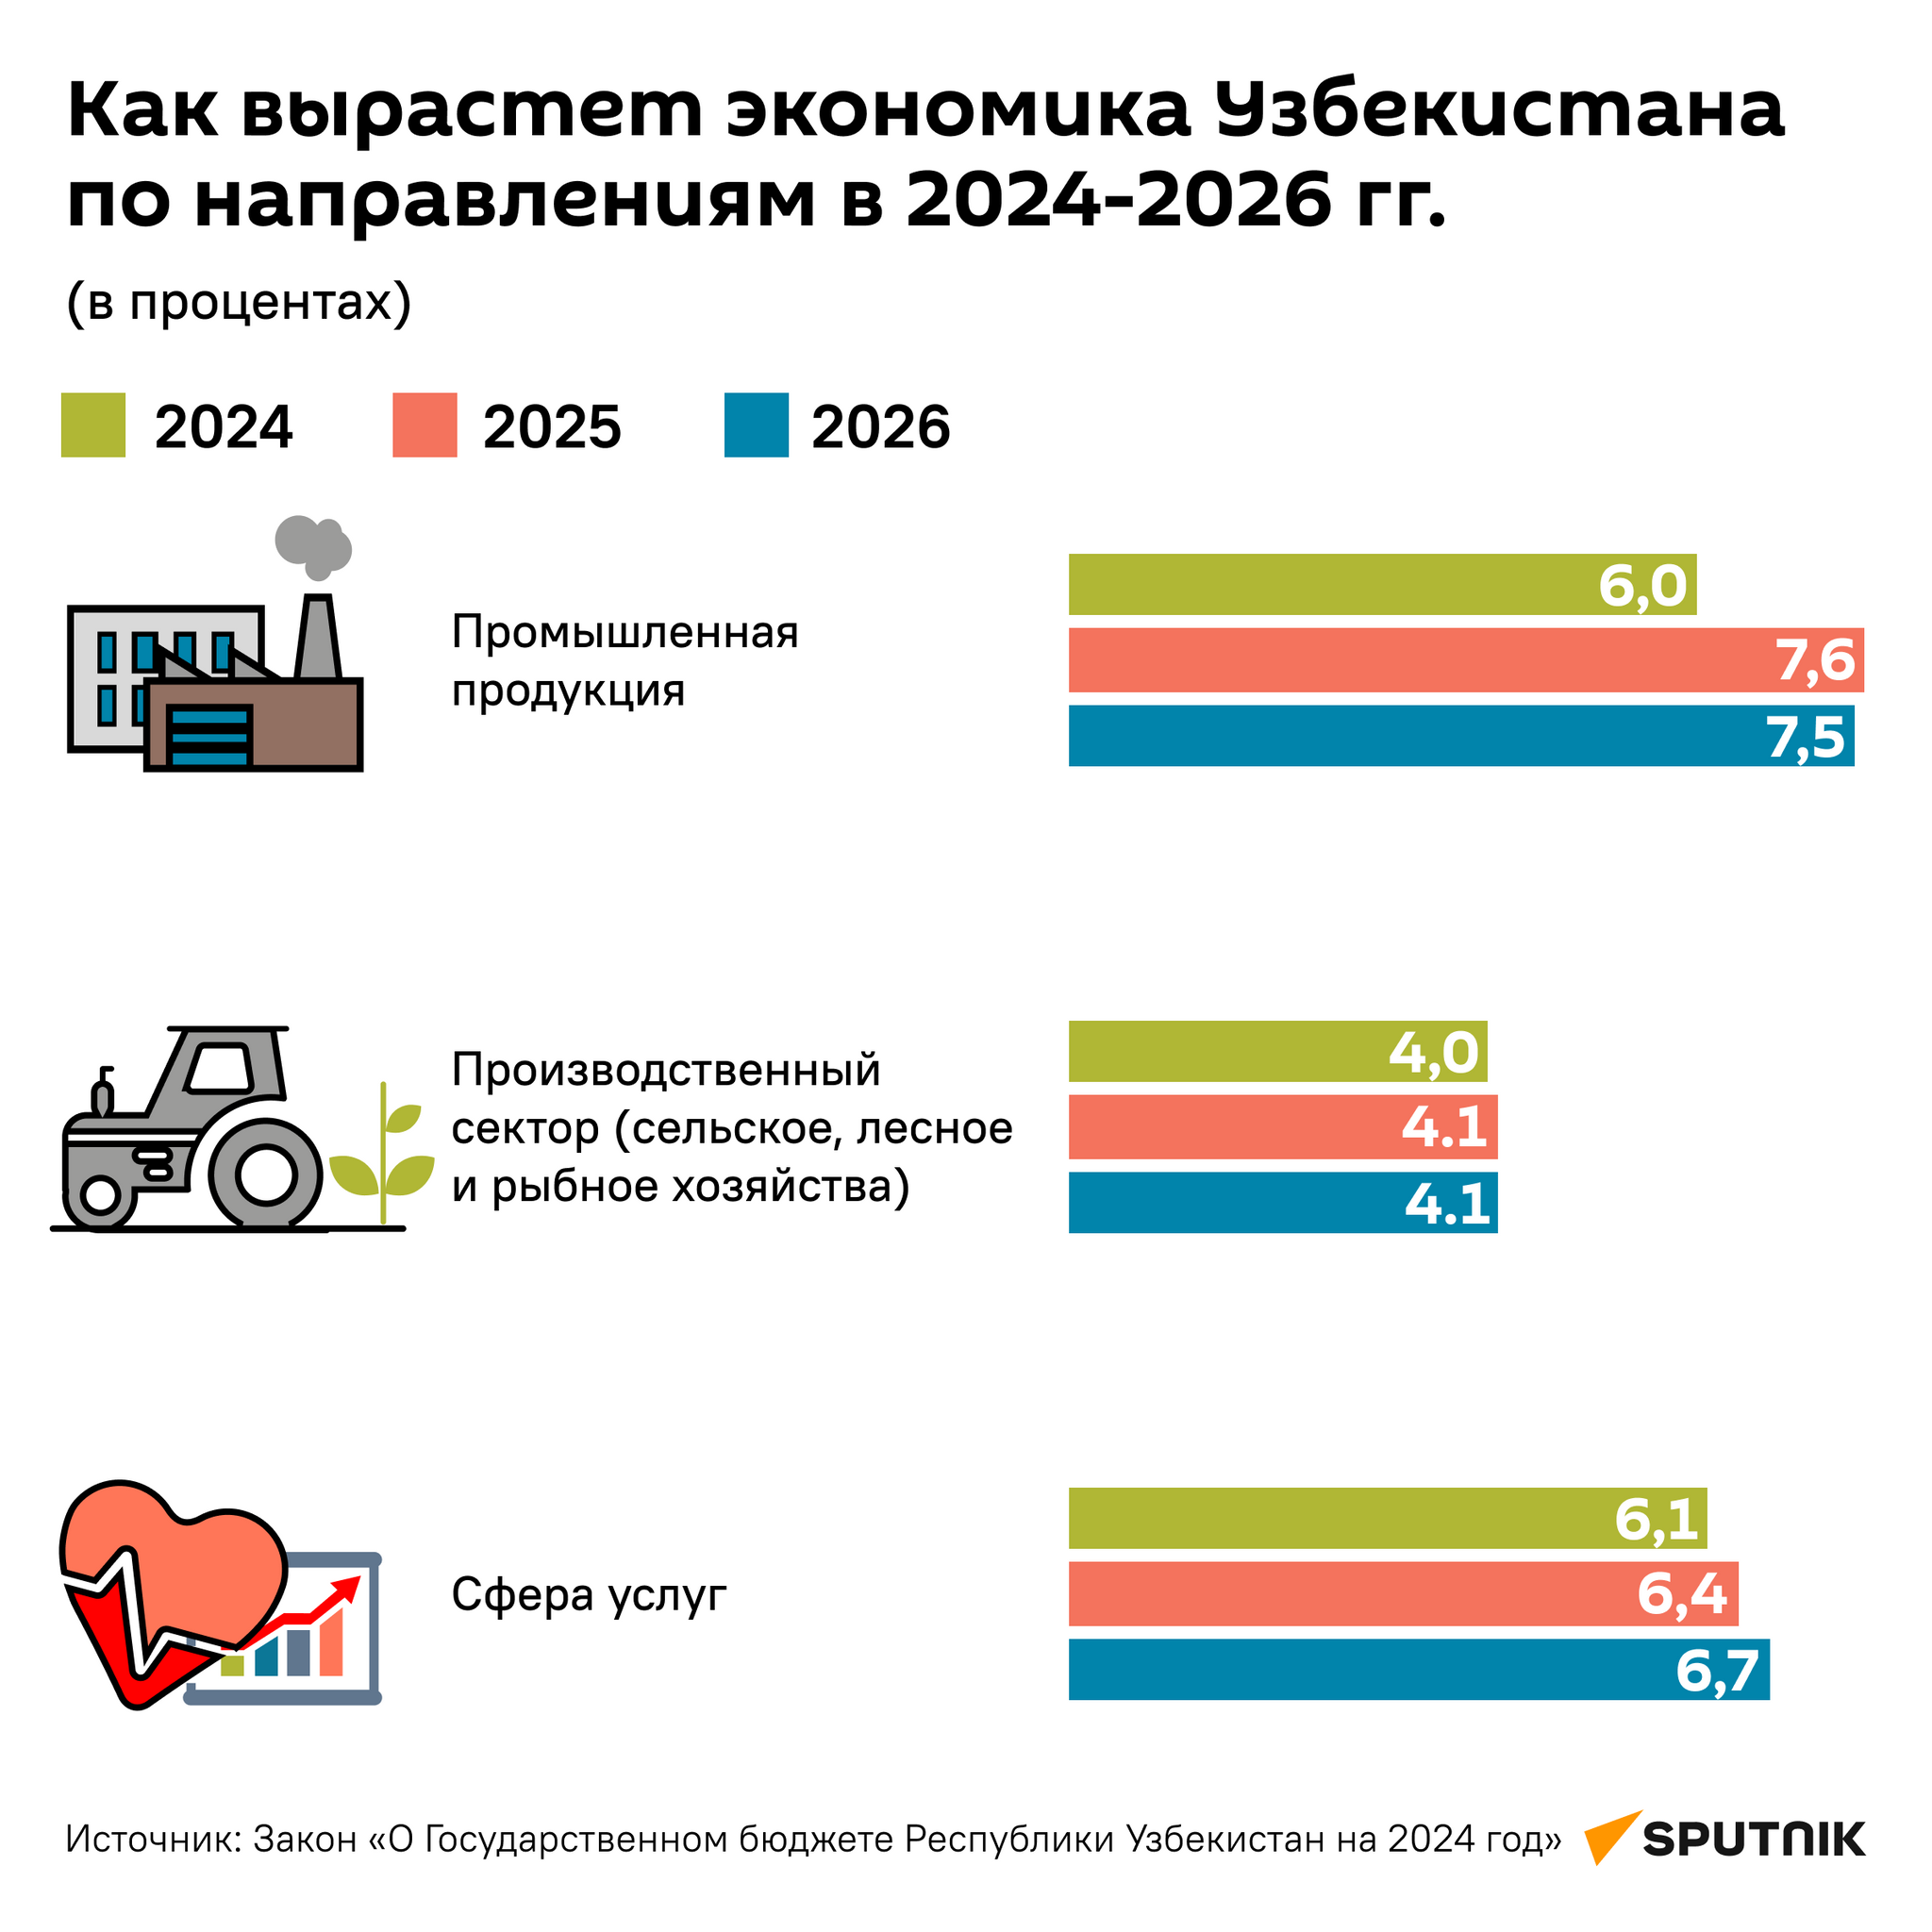 Как вырастет экономика Узбекистана по направлениям в 2024-2026 гг. - Sputnik Узбекистан